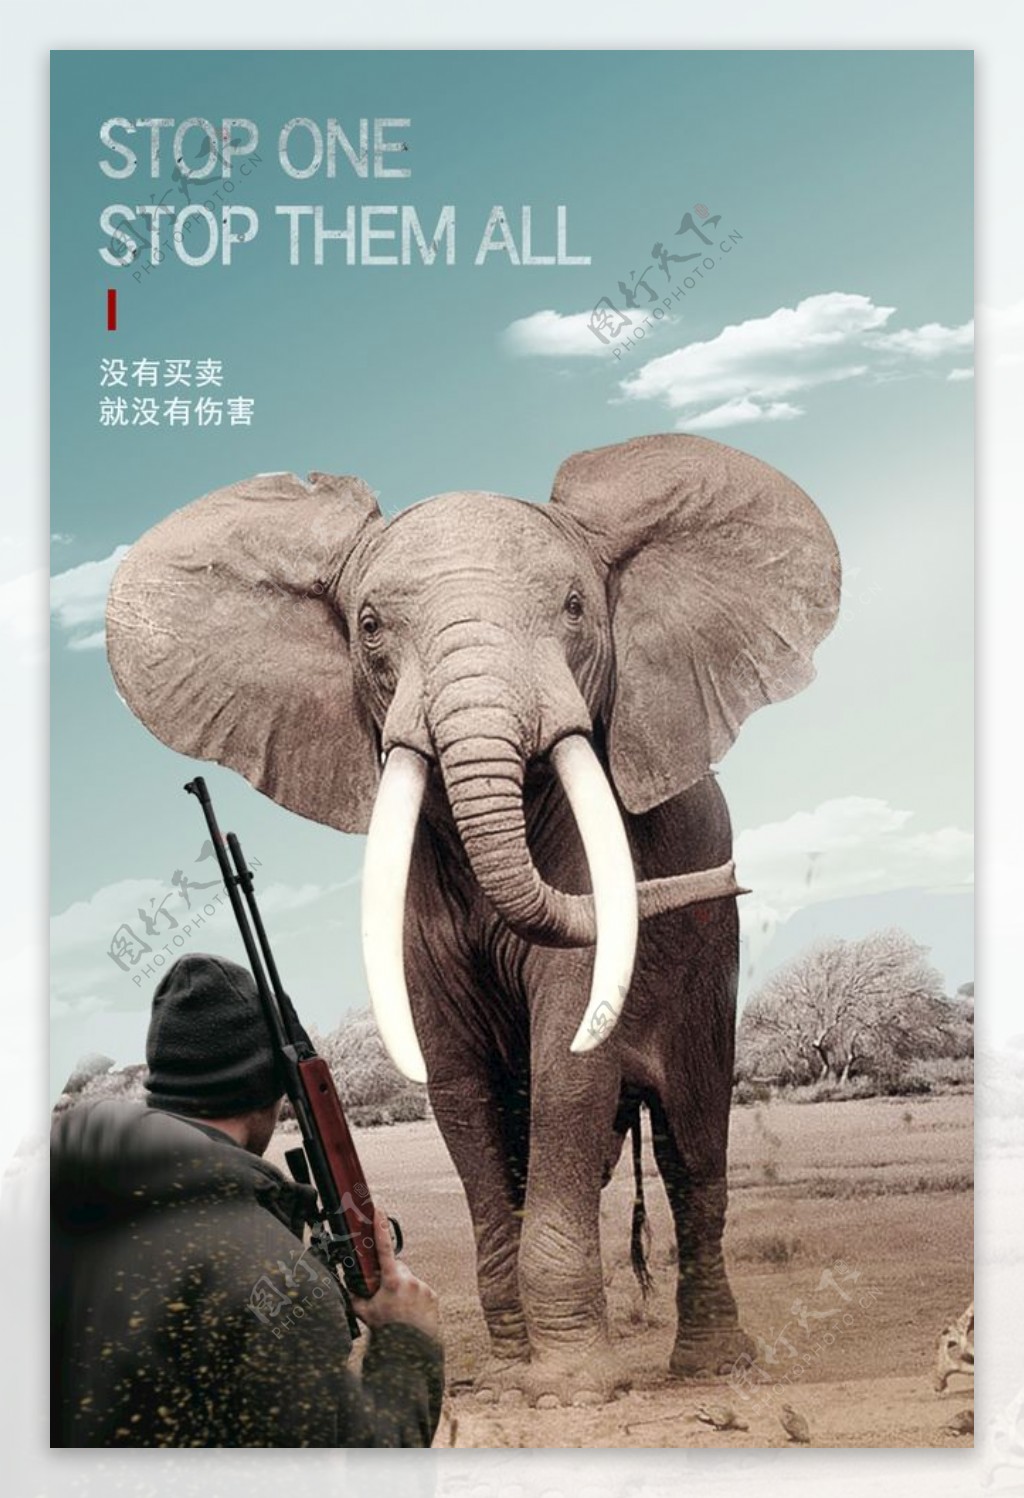 公益海报保护动物